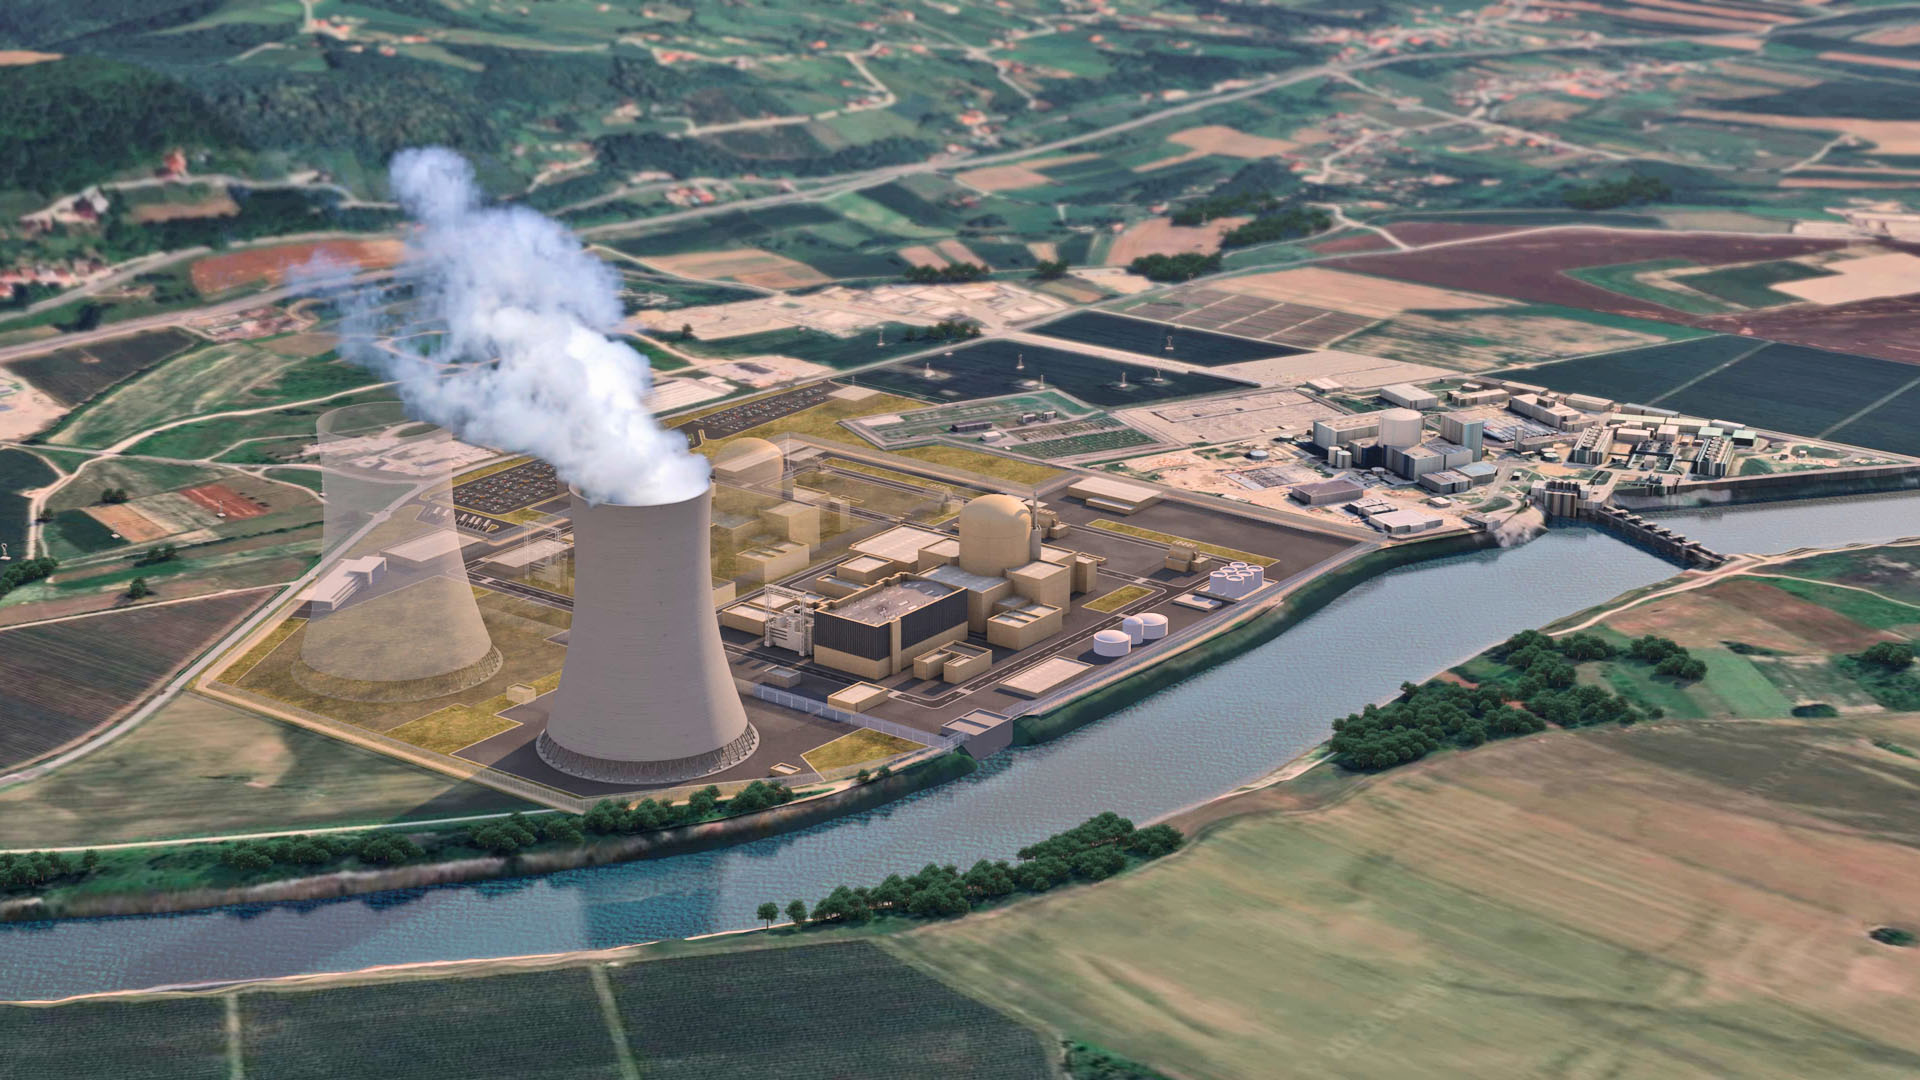  Slovinsko je další zemí, kde může vzniknout reaktor EPR1200, který EDF nabízí pro Dukovany